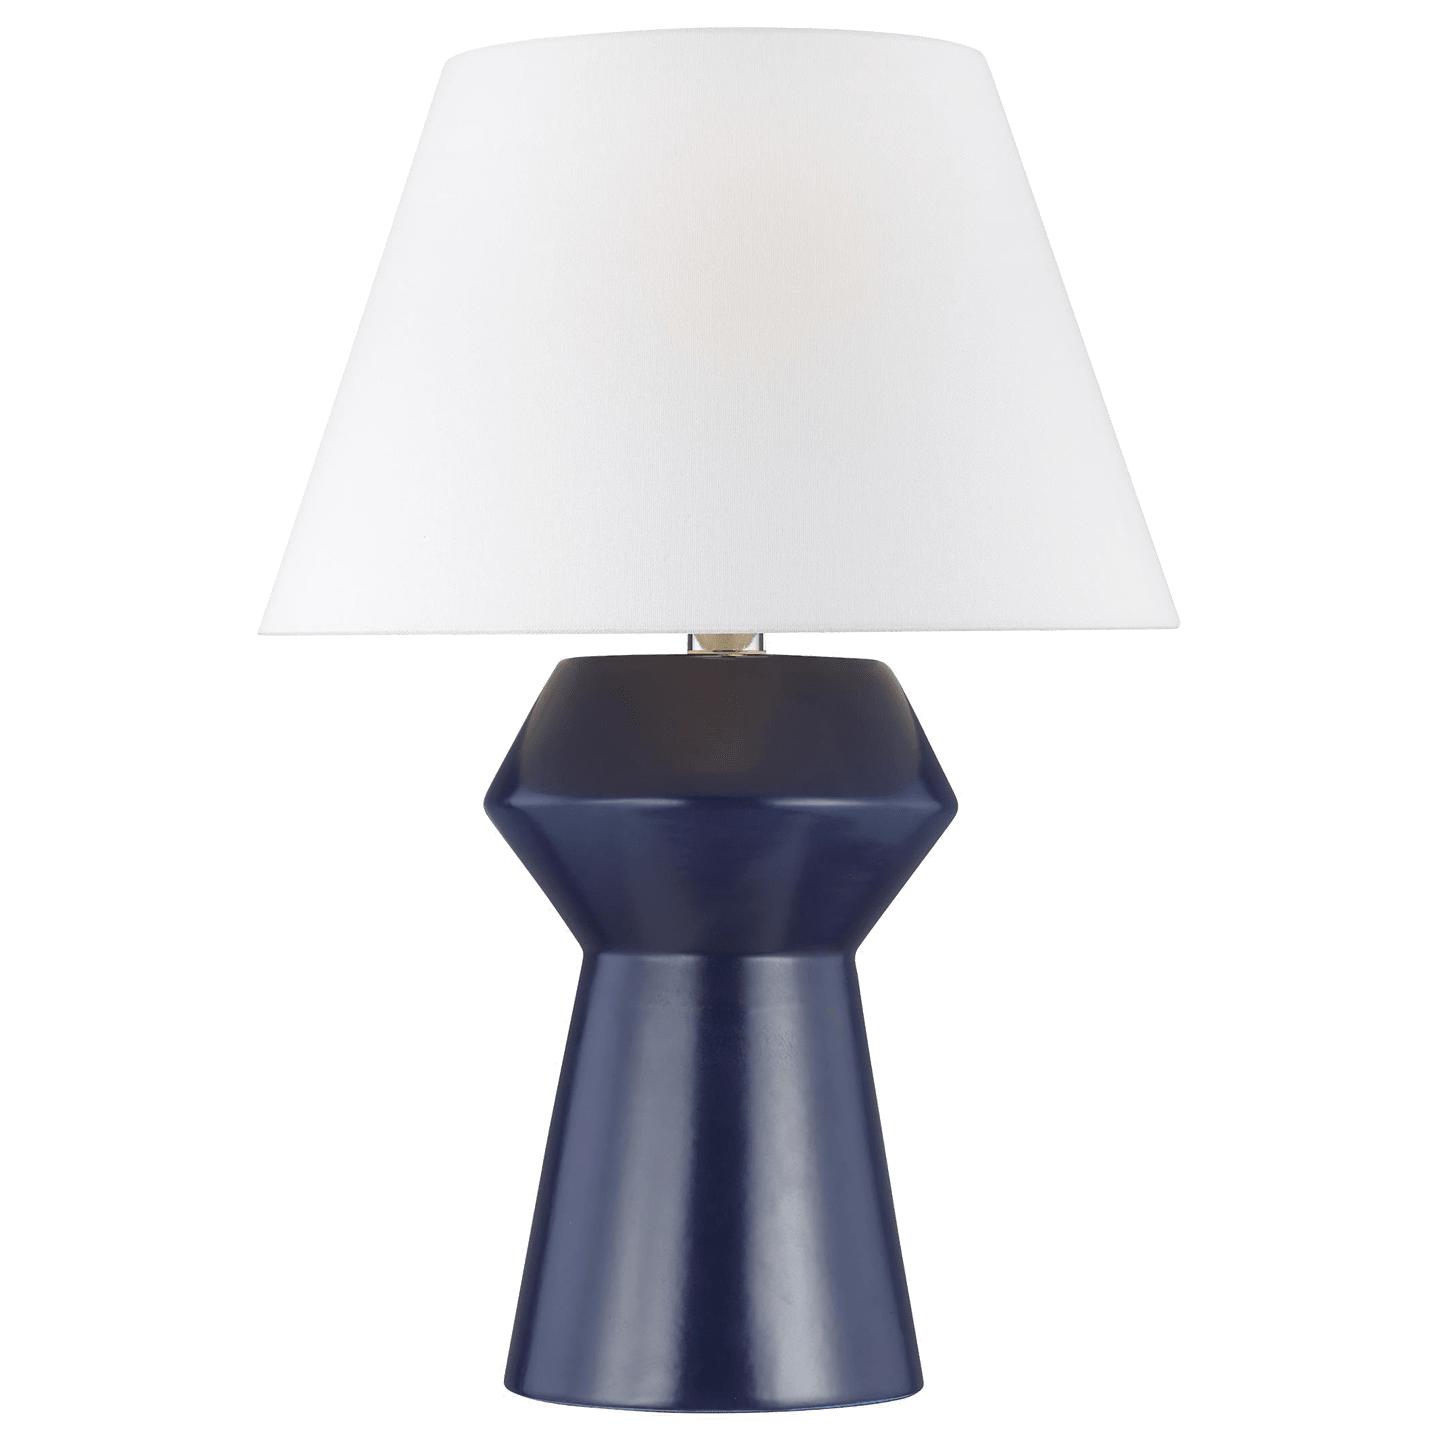 Купить Настольная лампа Abaco Inverted Table Lamp в интернет-магазине roooms.ru